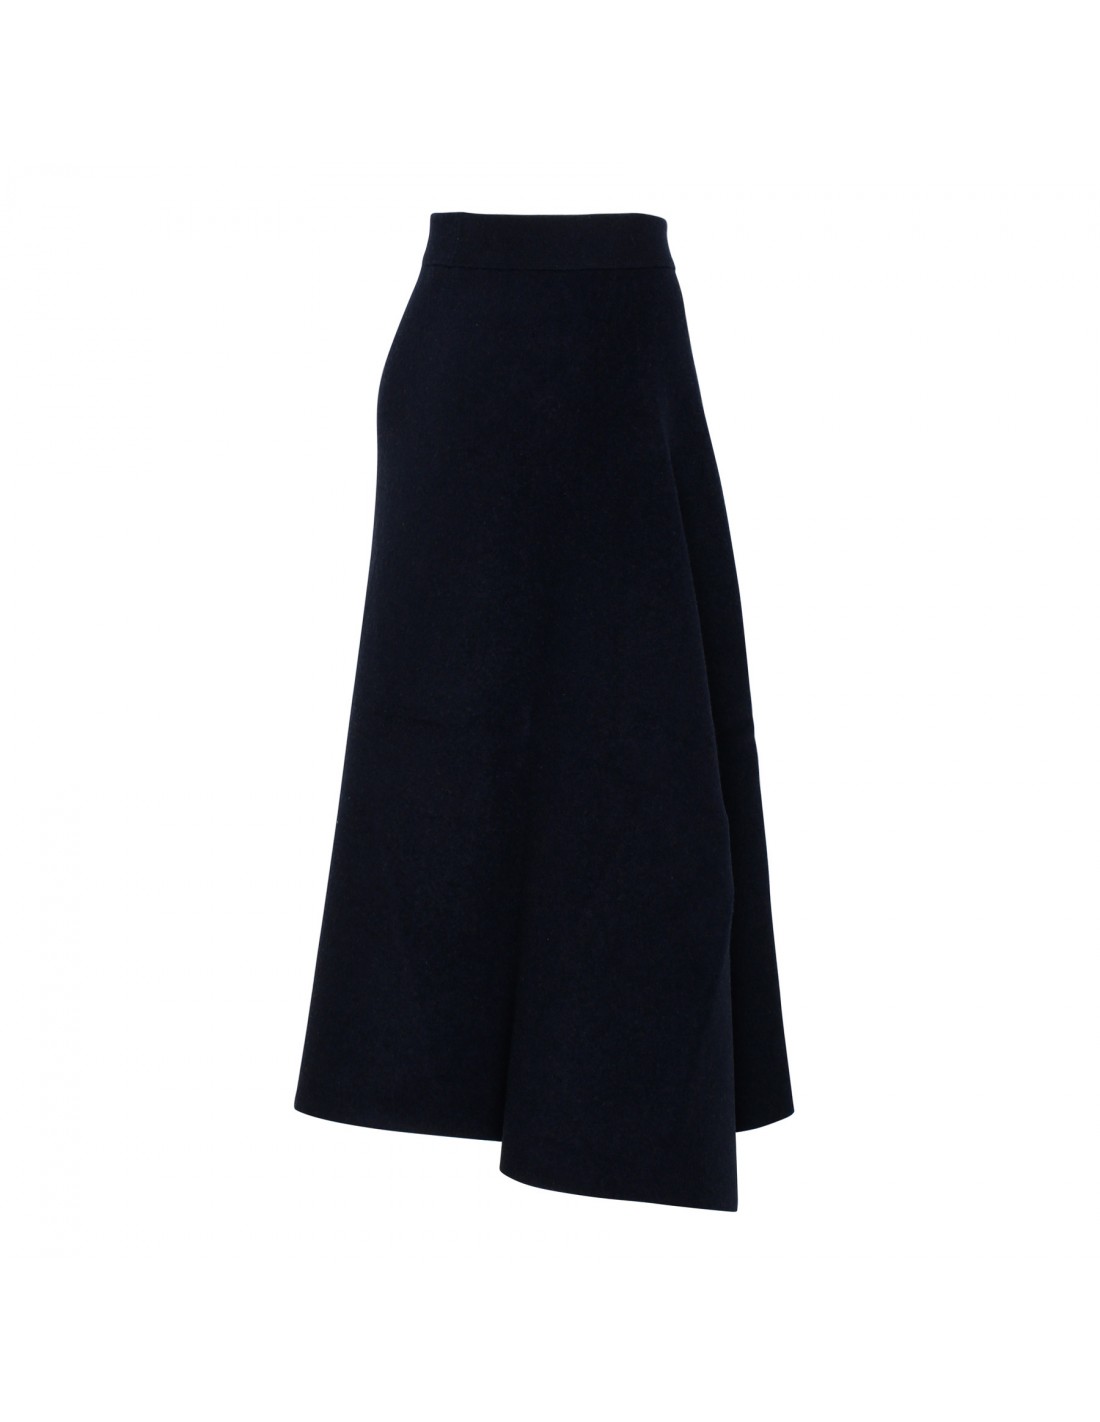 Blue knit virgin wool skirt